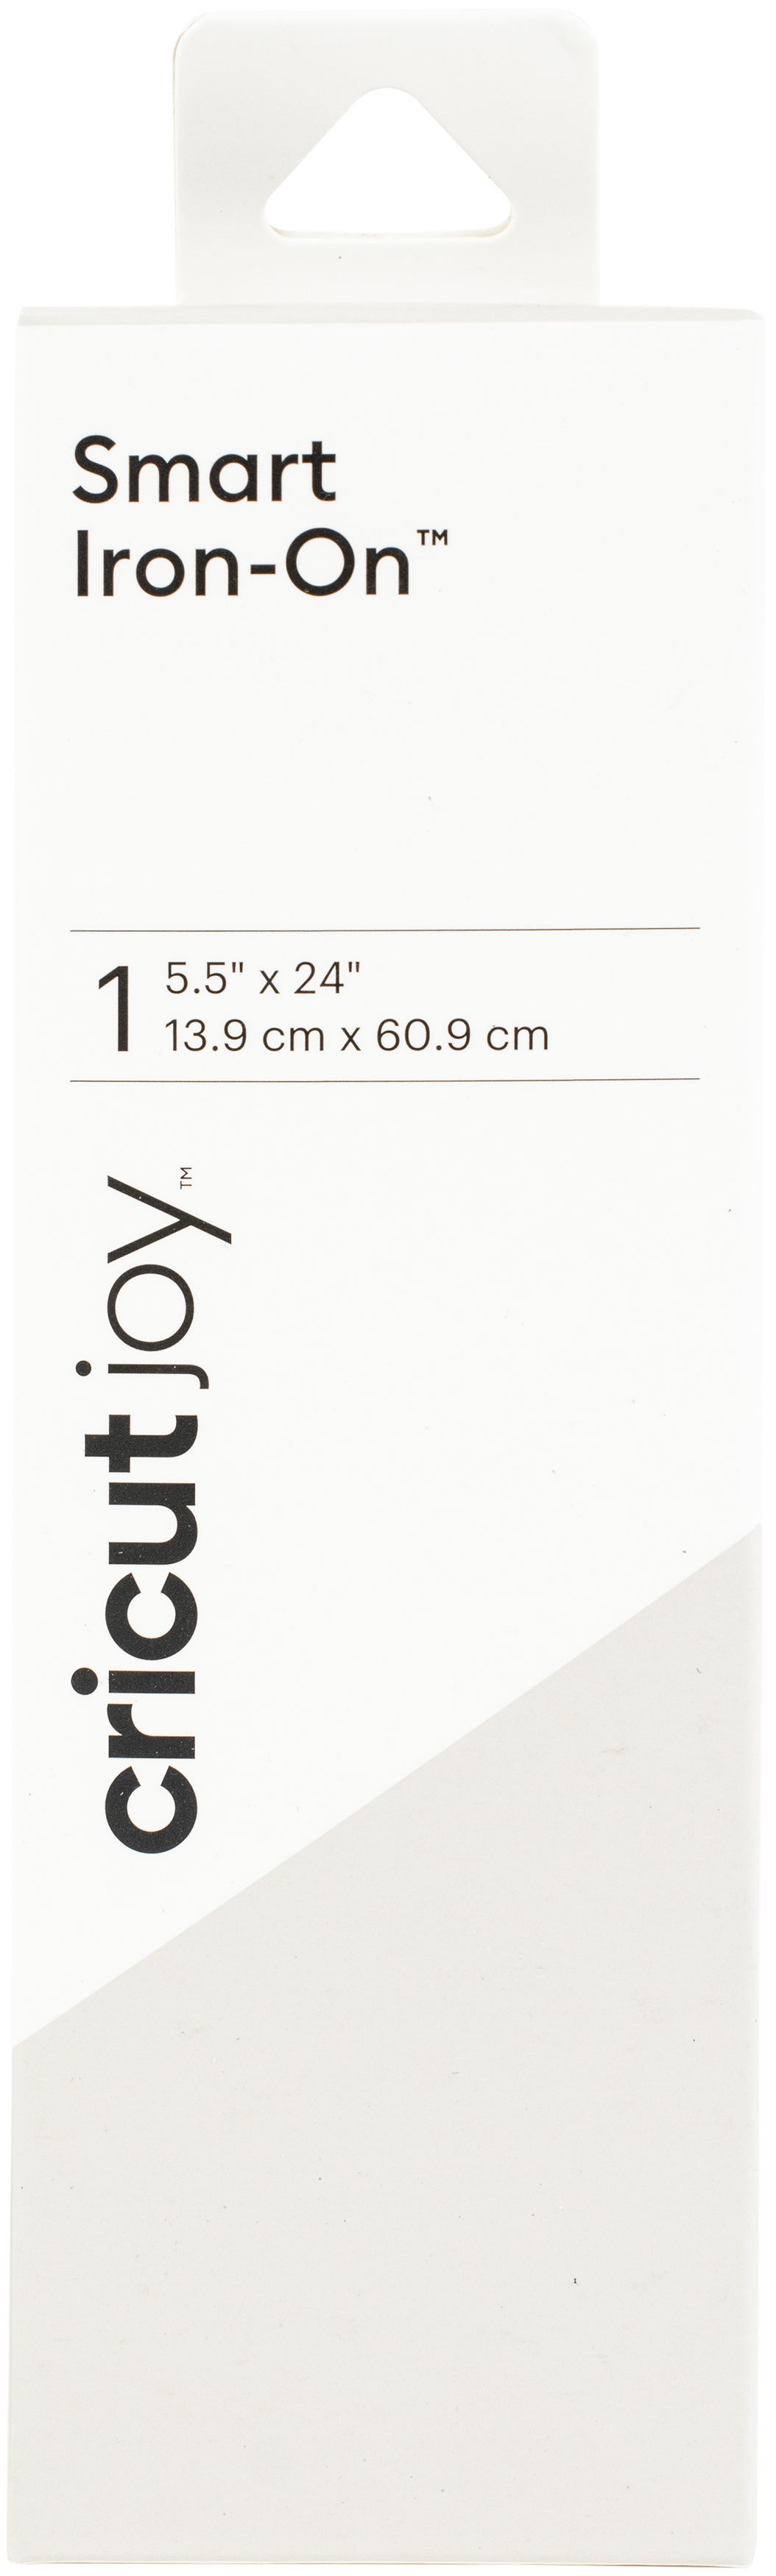 Cricut Joy Smart Iron-On Vinyl, Clay, 5.5 x 24